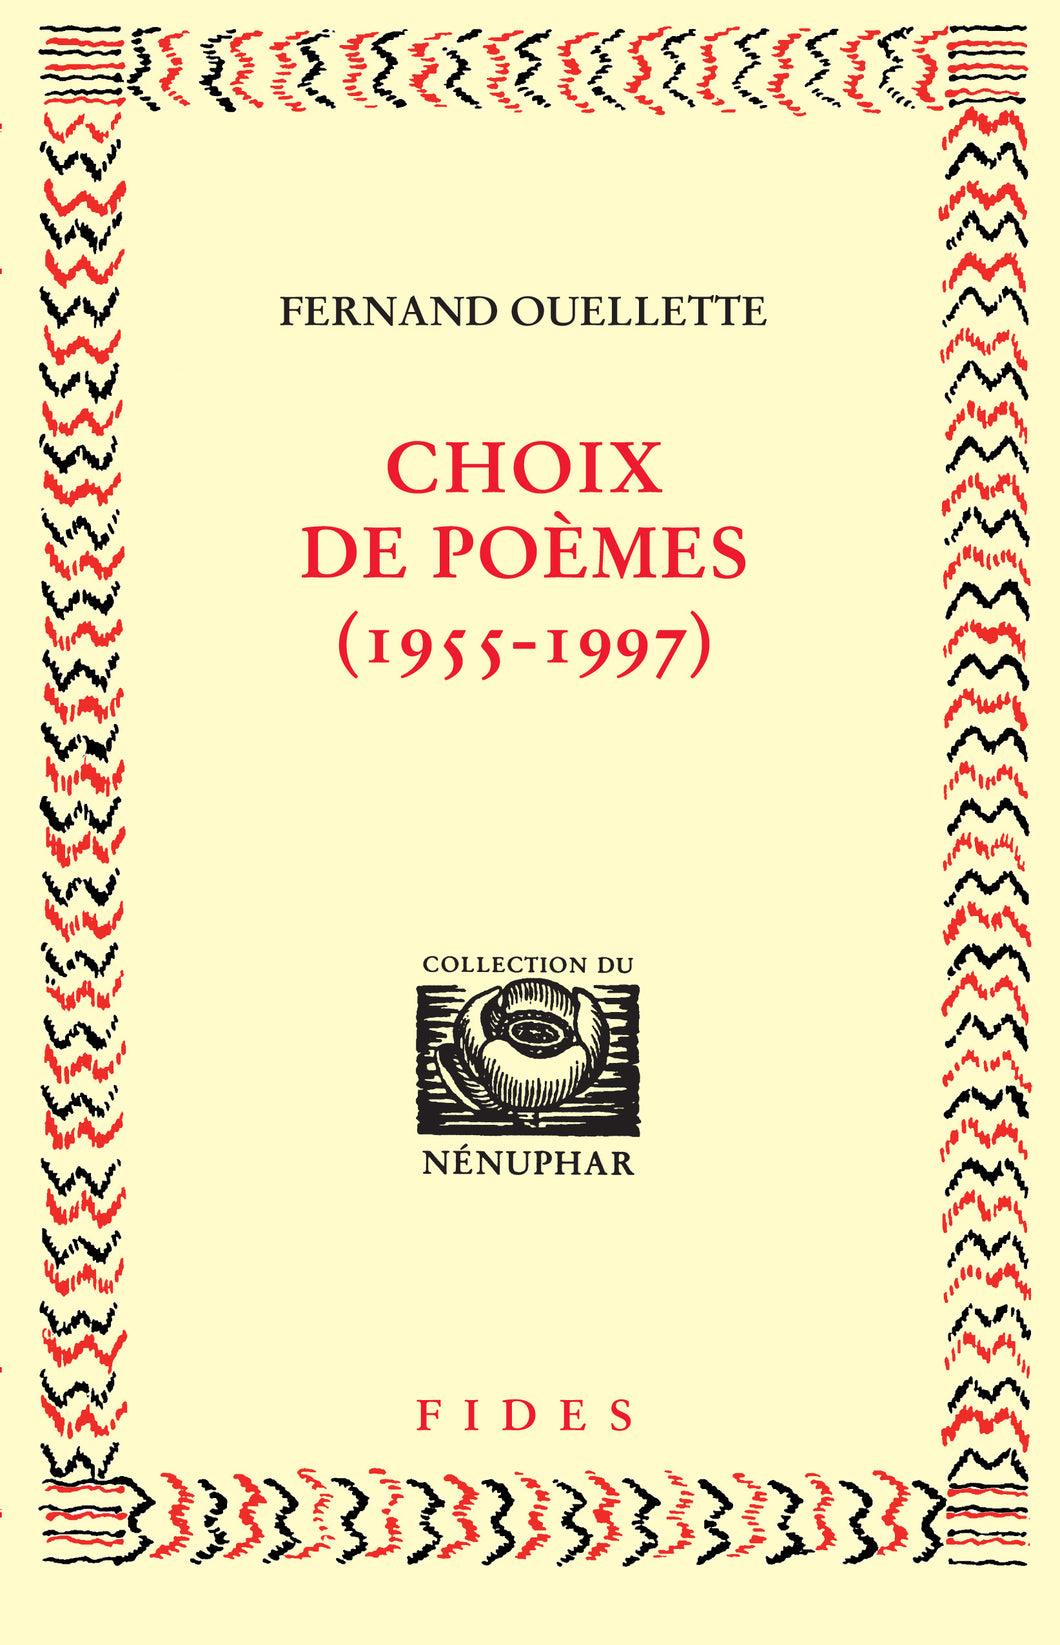 Choix de poèmes (1955-1997)